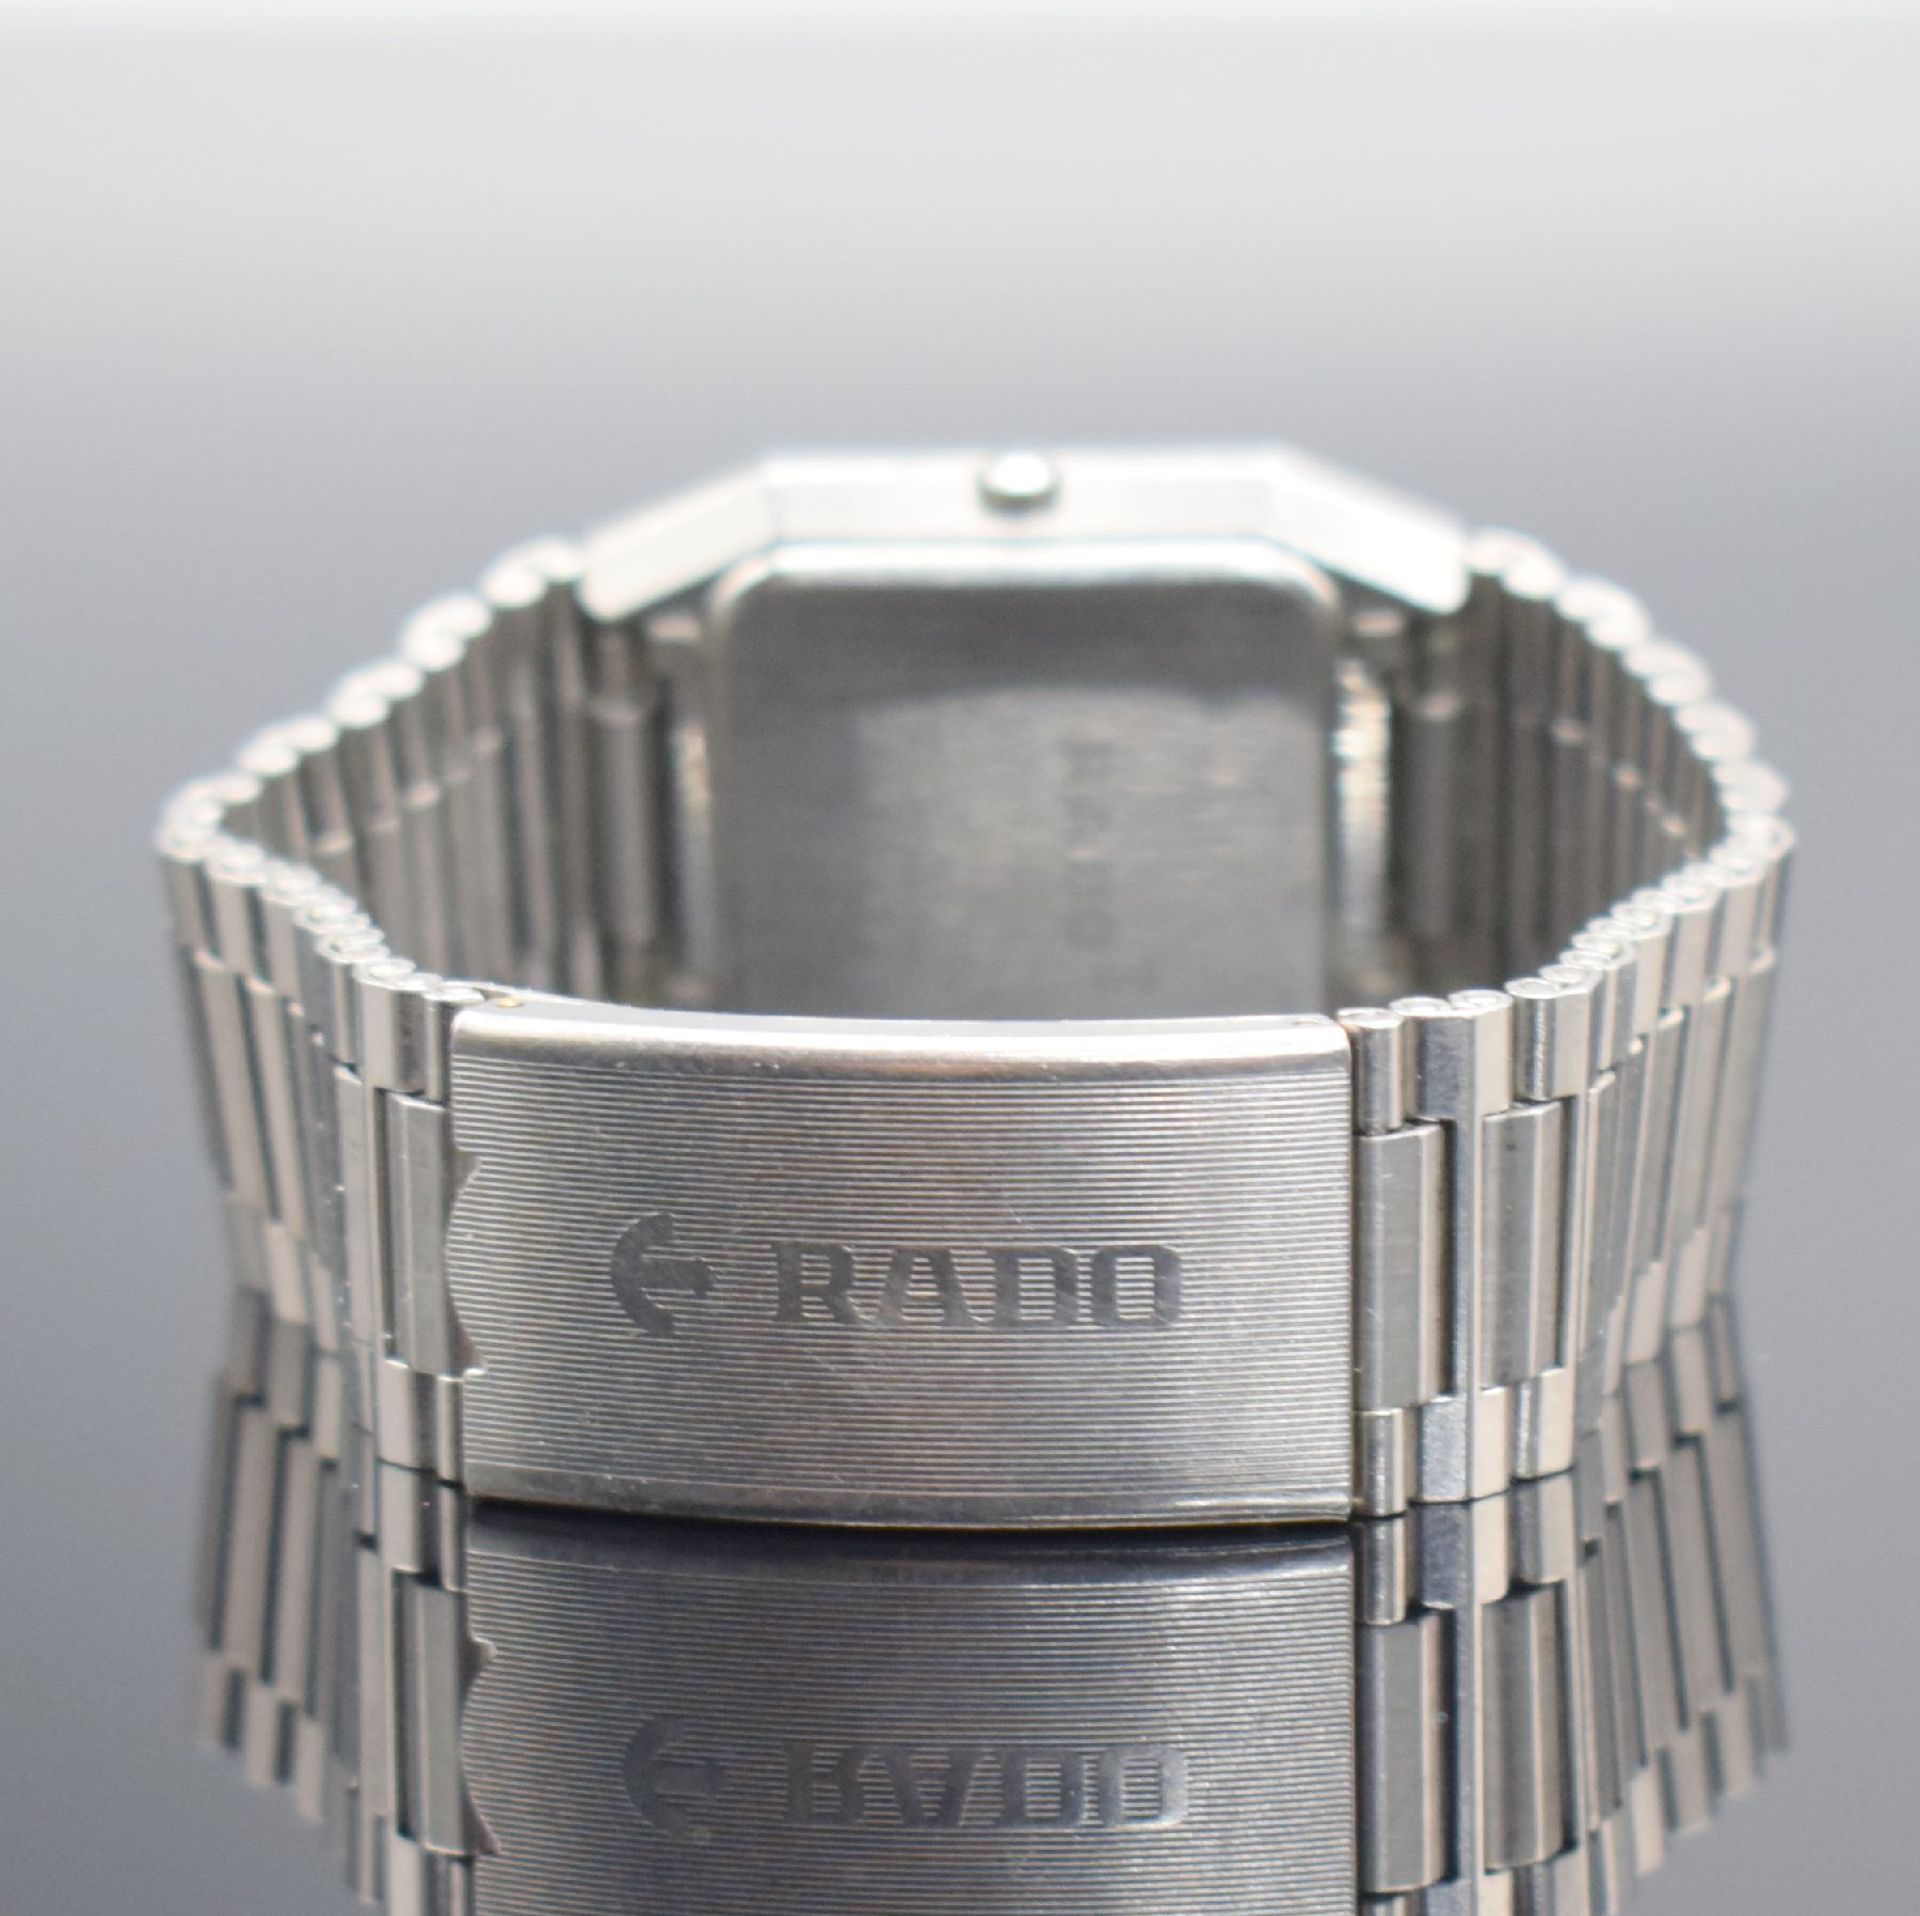 RADO Diastar Armbanduhr in Stahl Referenz 129.0292.3, - Bild 5 aus 6